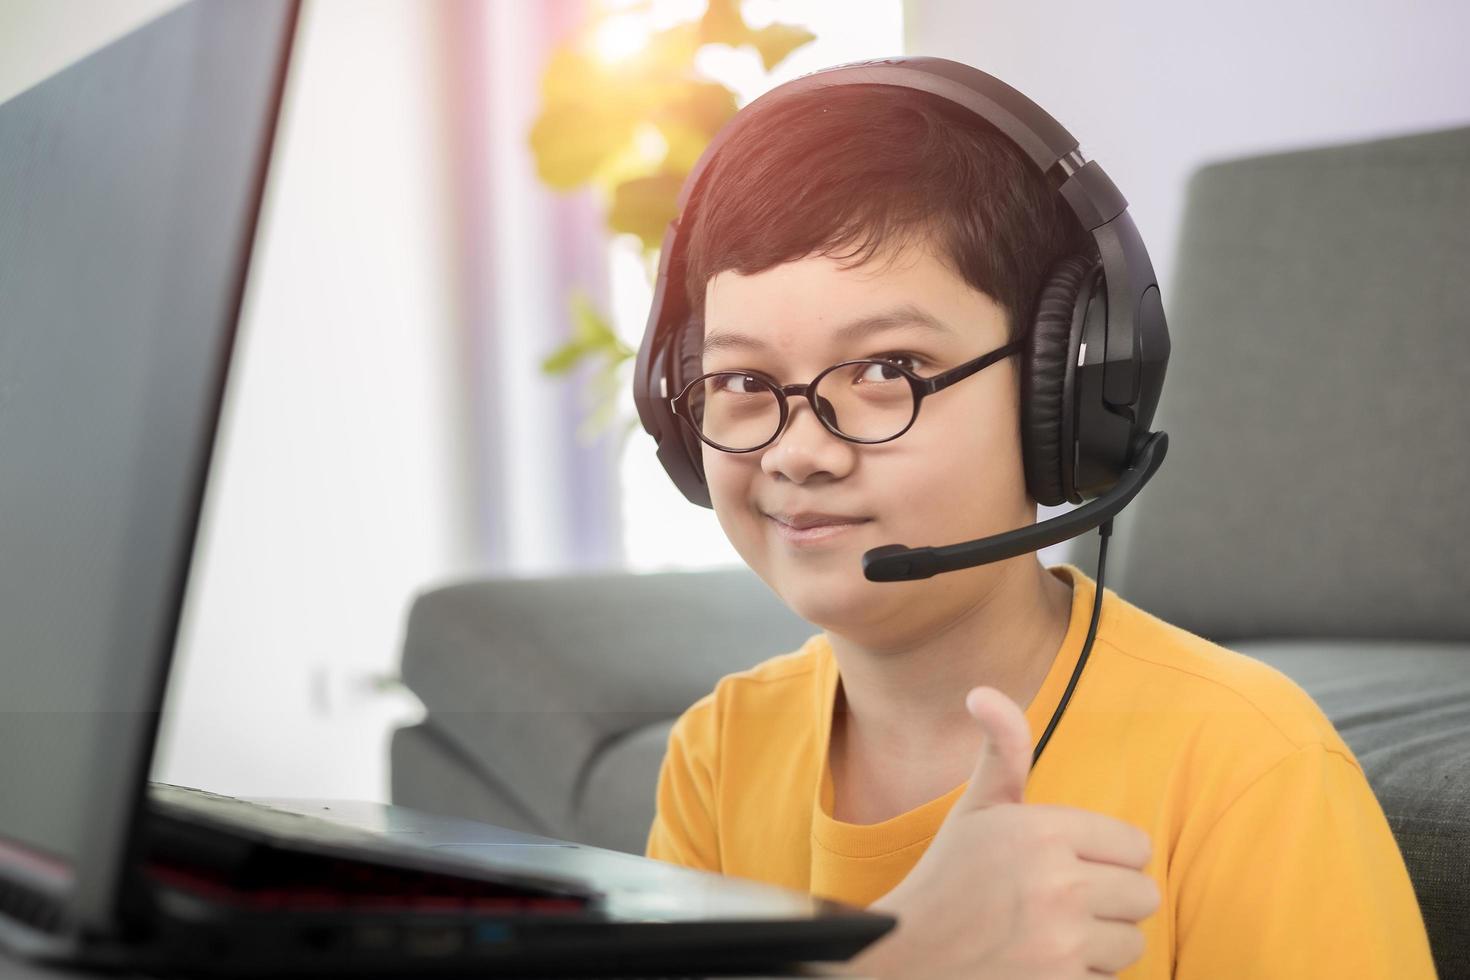 jeune et mignon petit garçon asiatique des années 10 portant un casque assis dans le salon et utilisant un ordinateur portable pour étudier à distance en ligne et pouce levé avec un visage heureux pendant une épidémie de coronavirus photo